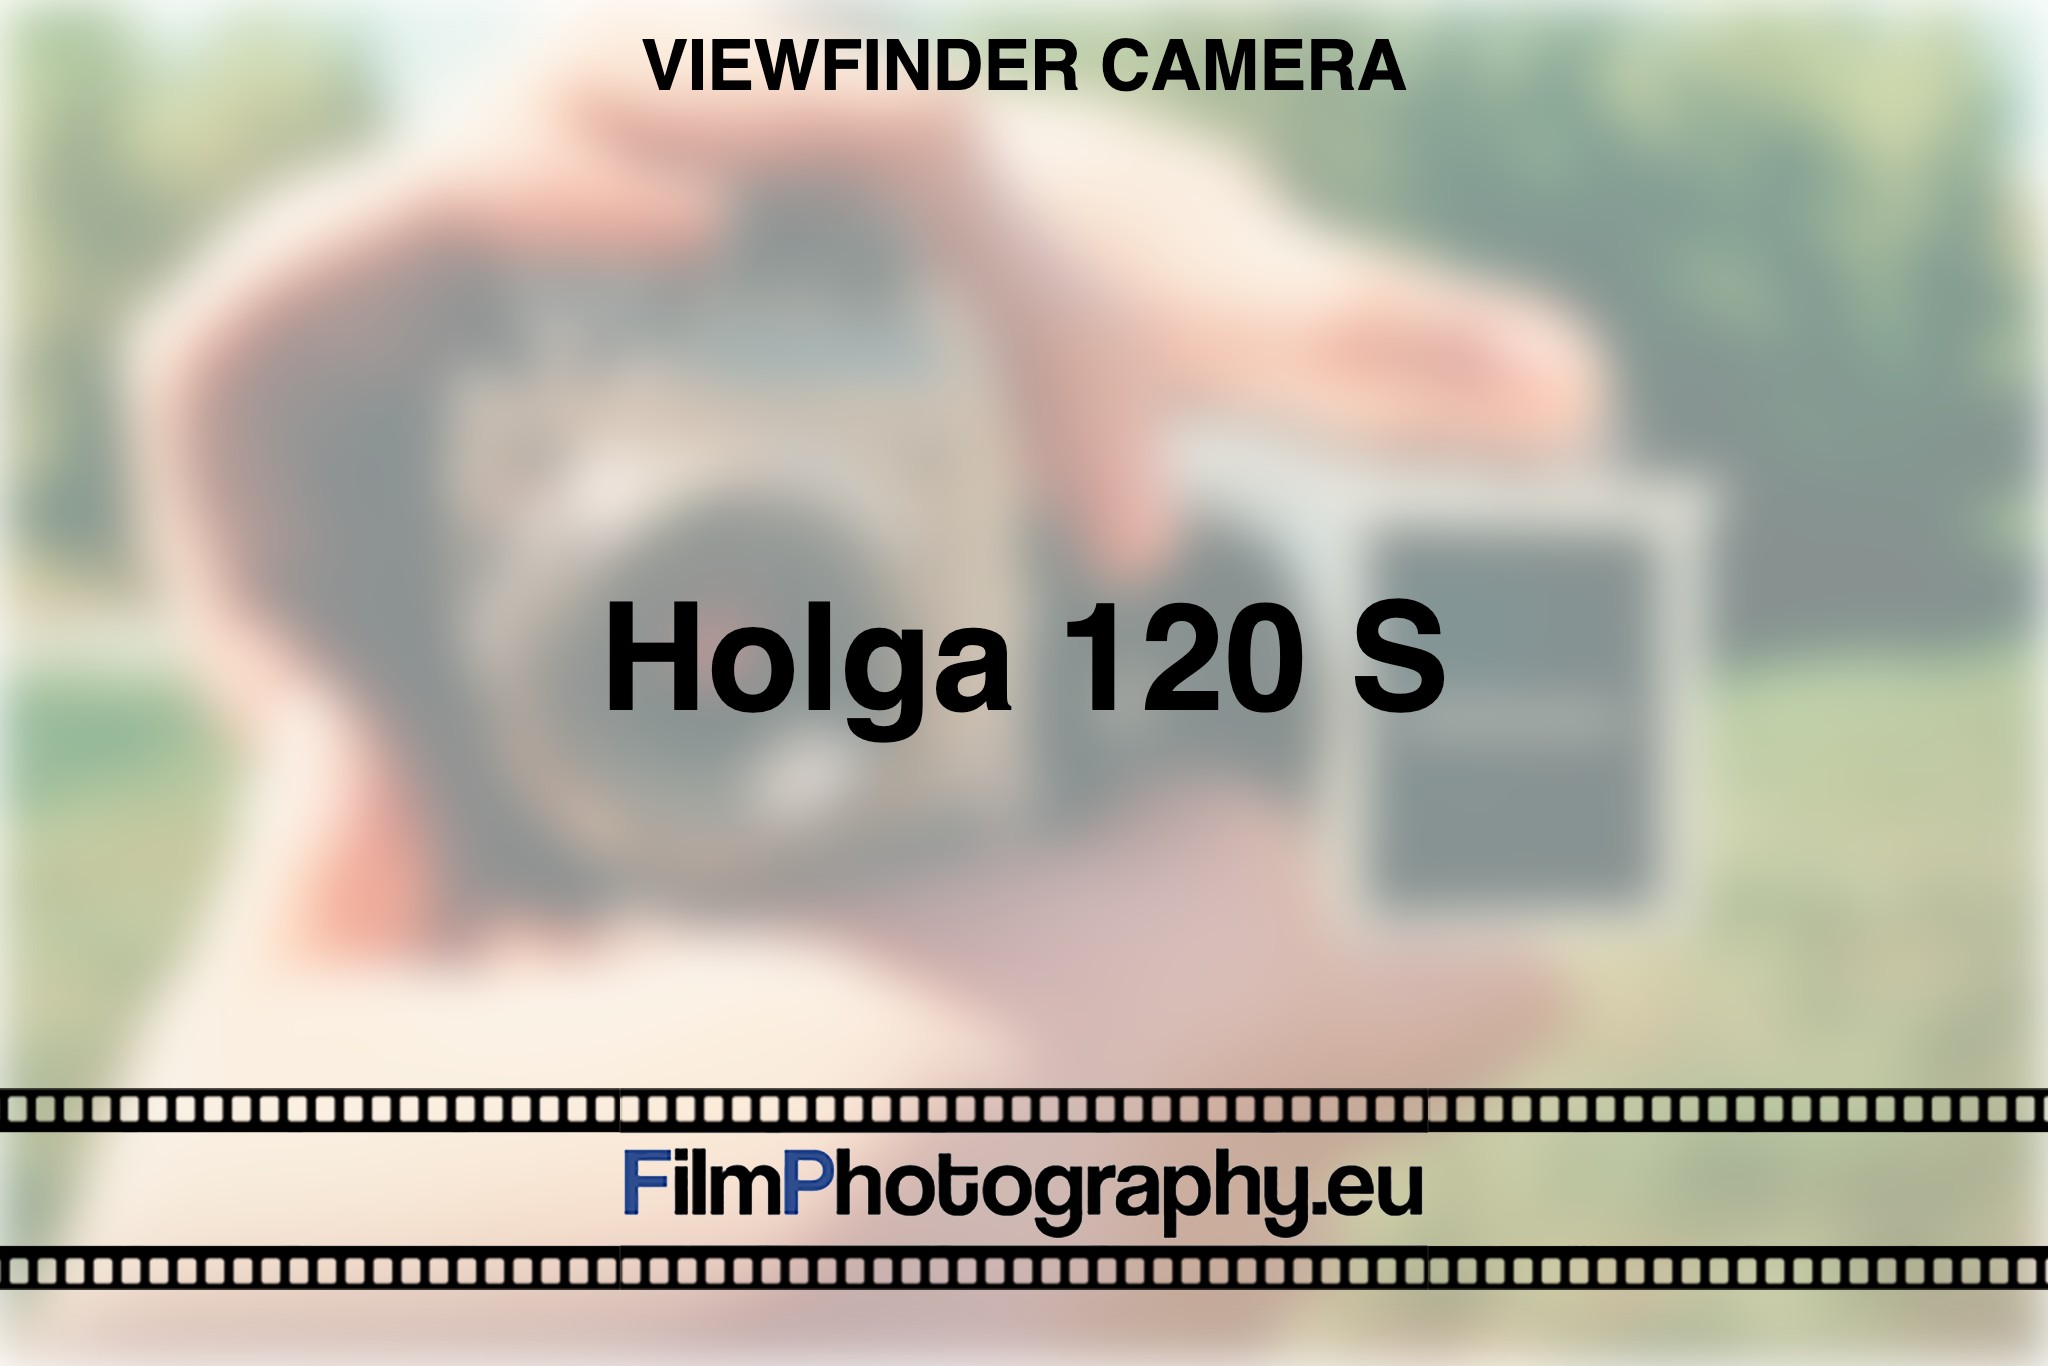 holga-120-s-viewfinder-camera-bnv